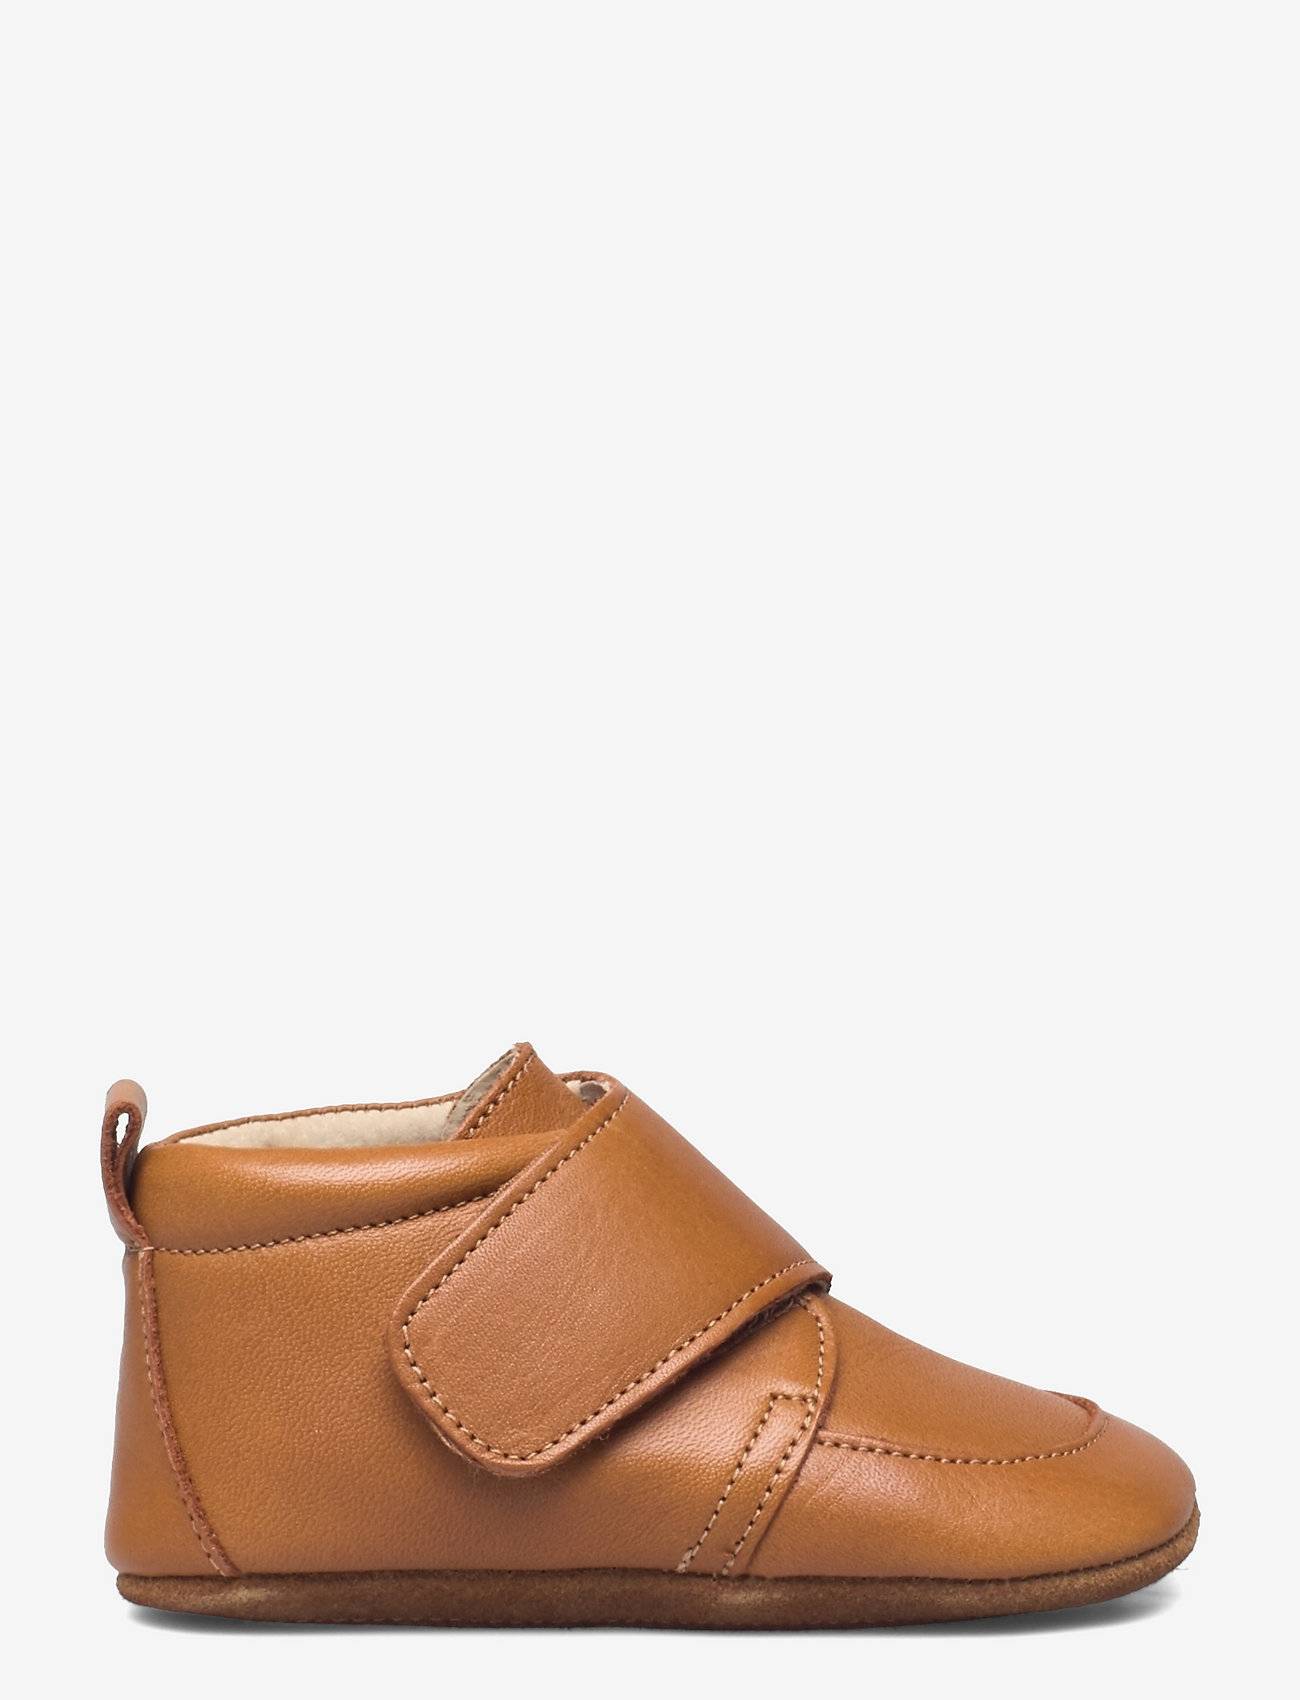 En Fant - Baby Leather slippers - hjemmesko - leather brown - 1